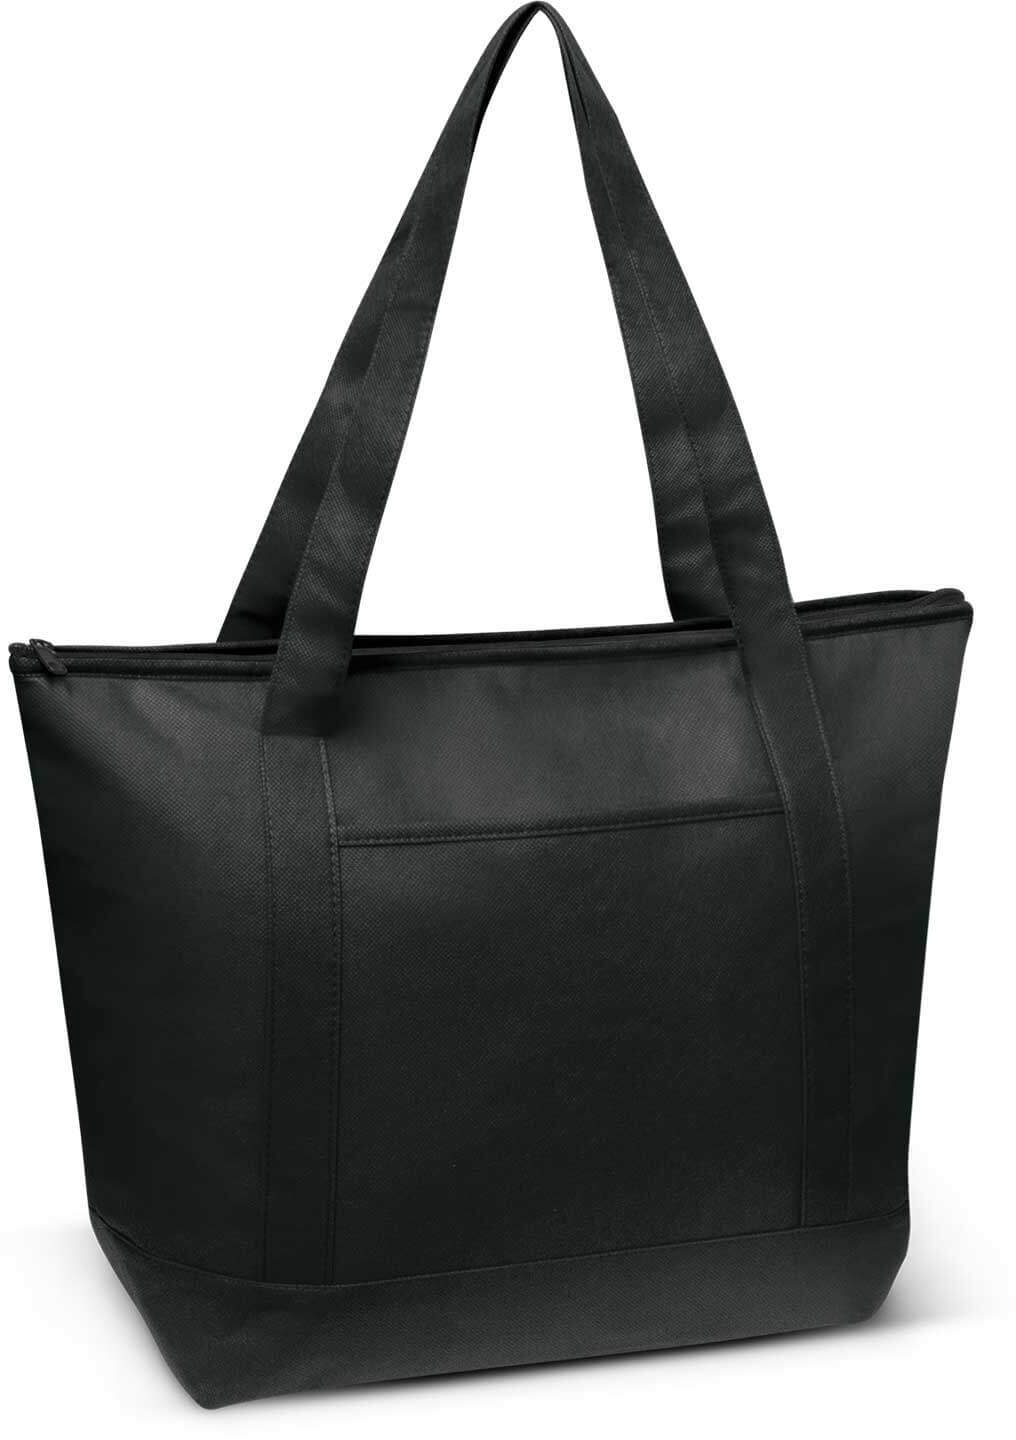 Black Orca Cooler Bag